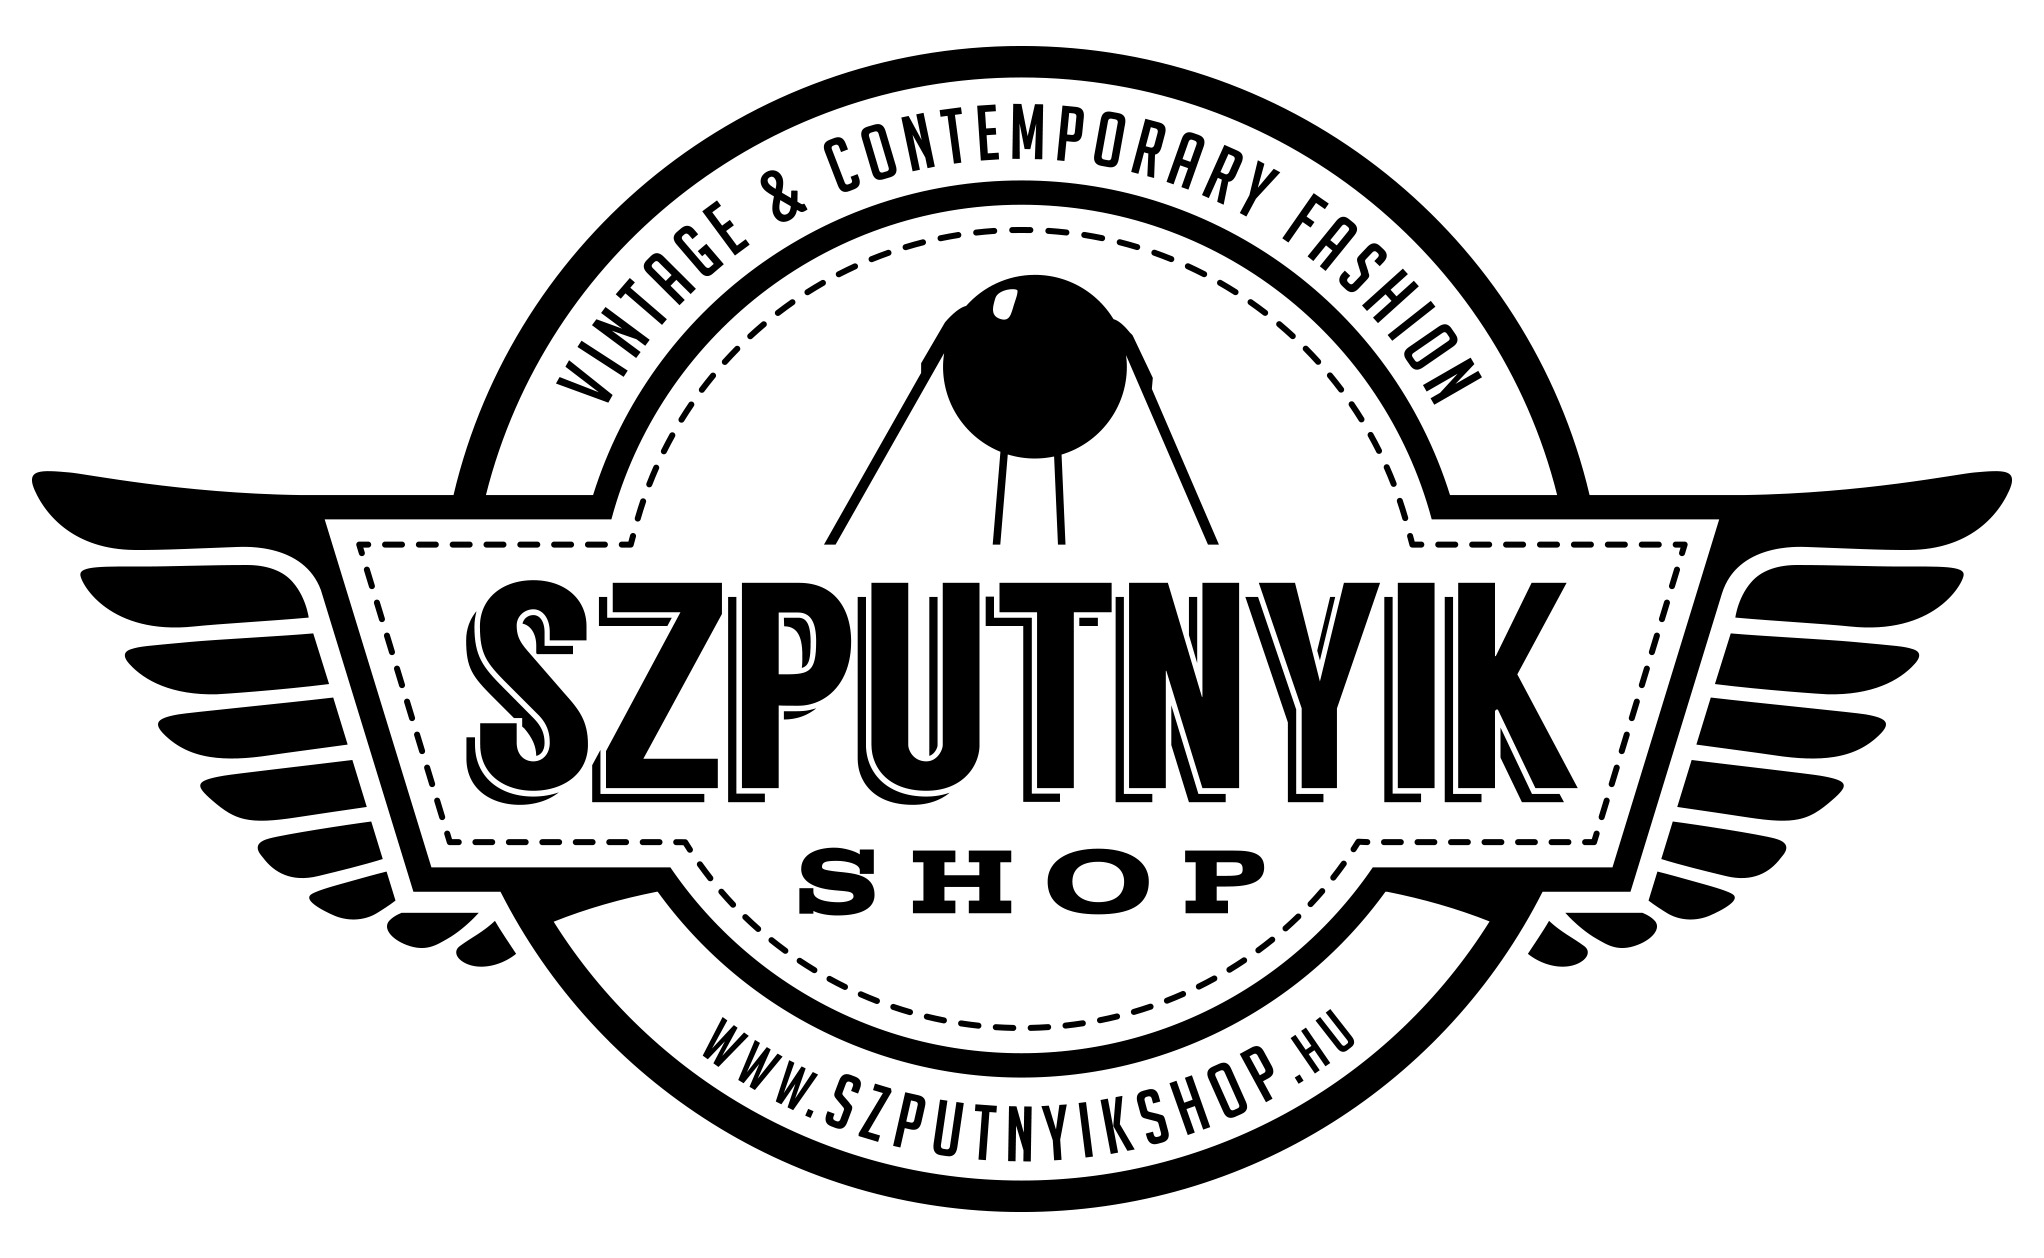 szputnyik_logo.jpg